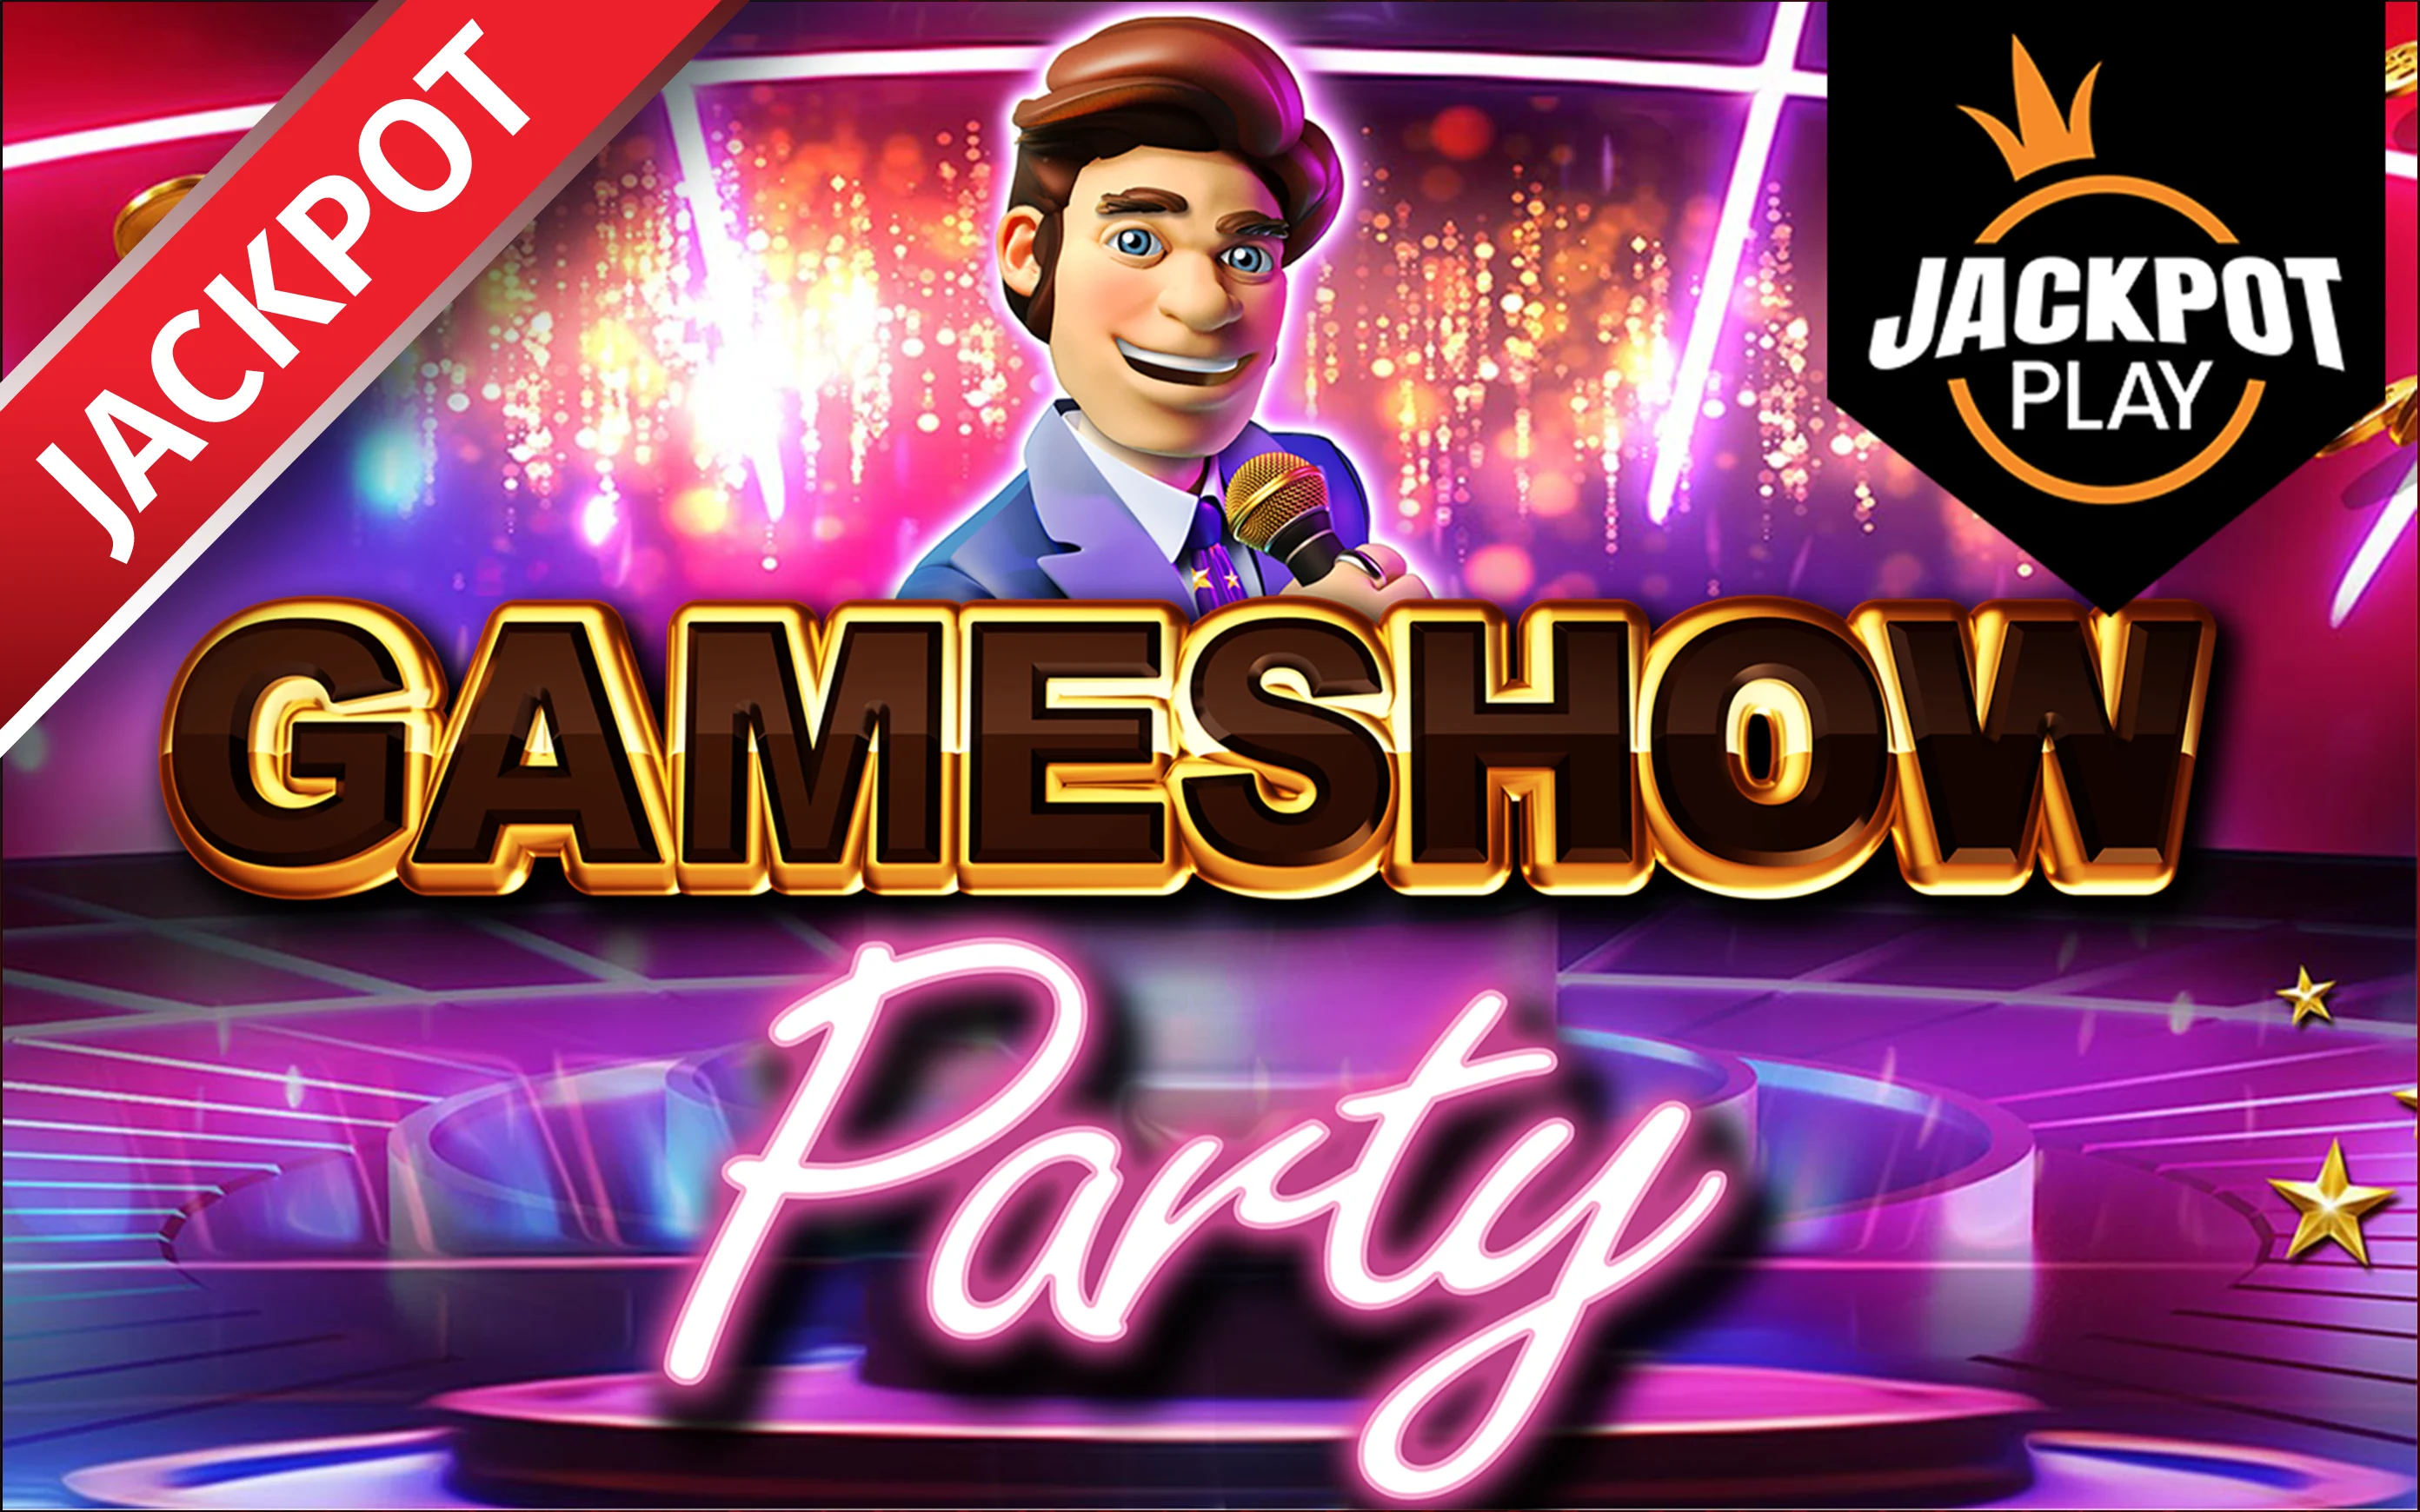 Jouer à Gameshow Party Jackpot Play sur le casino en ligne Starcasino.be